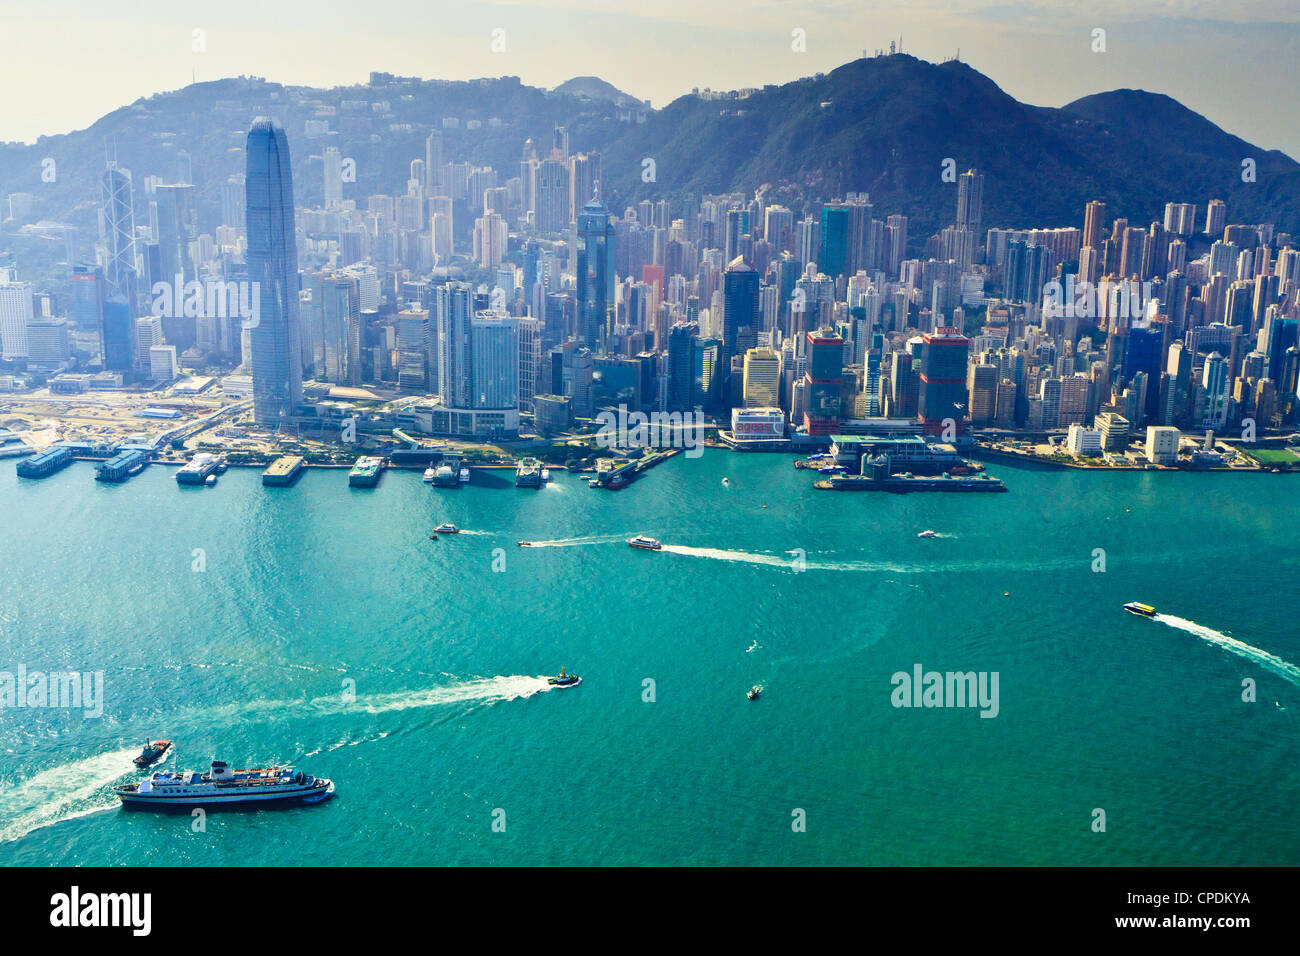 Cityscape of Central, Hong Kong's main financial district, Hong Kong Island, and Victoria Harbour, Hong Kong, China, Asia Stock Photo